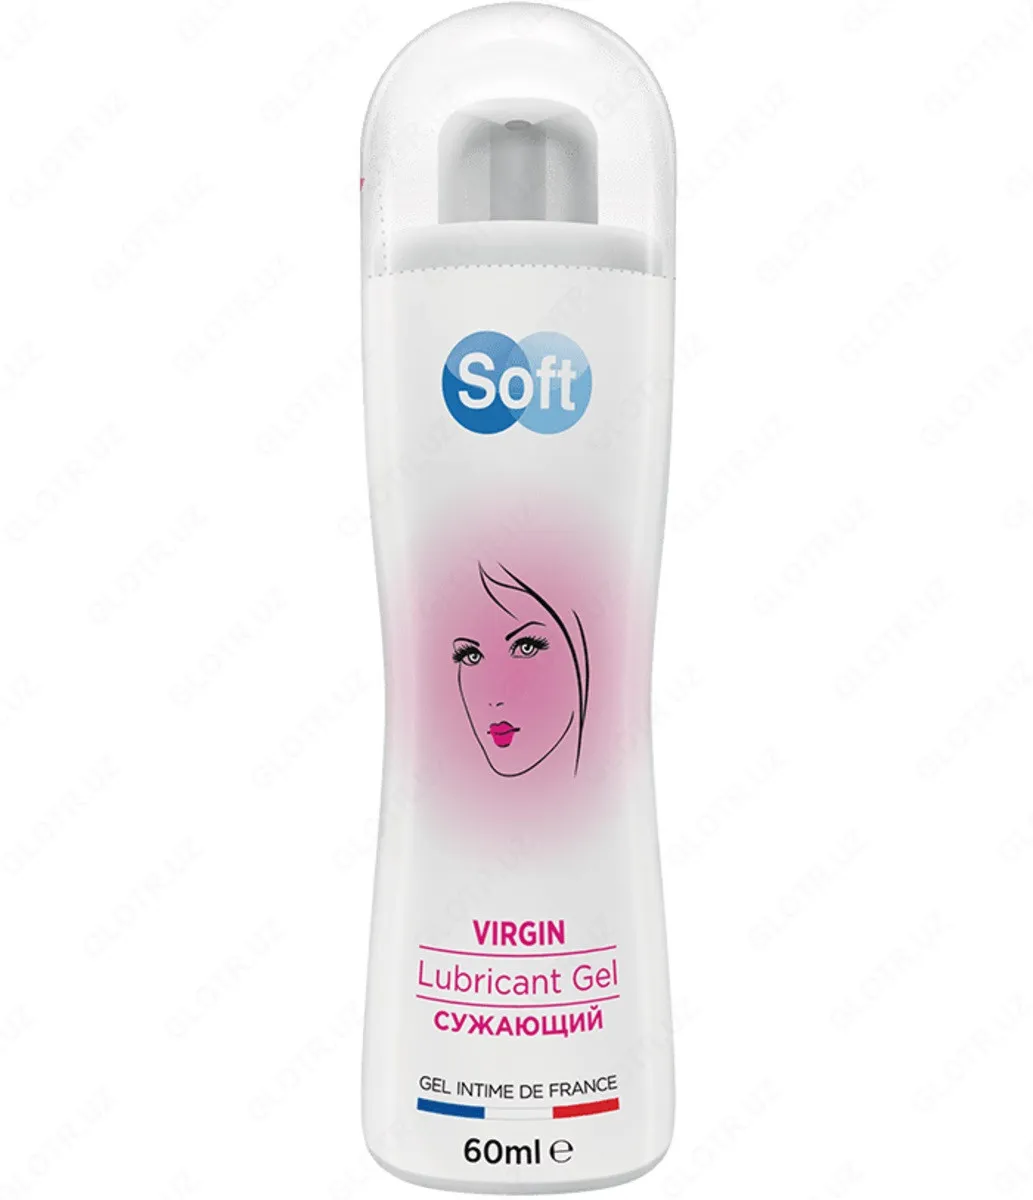 Toraytiruvchi lubricant-gel Soft Virgin lubricant gel#2